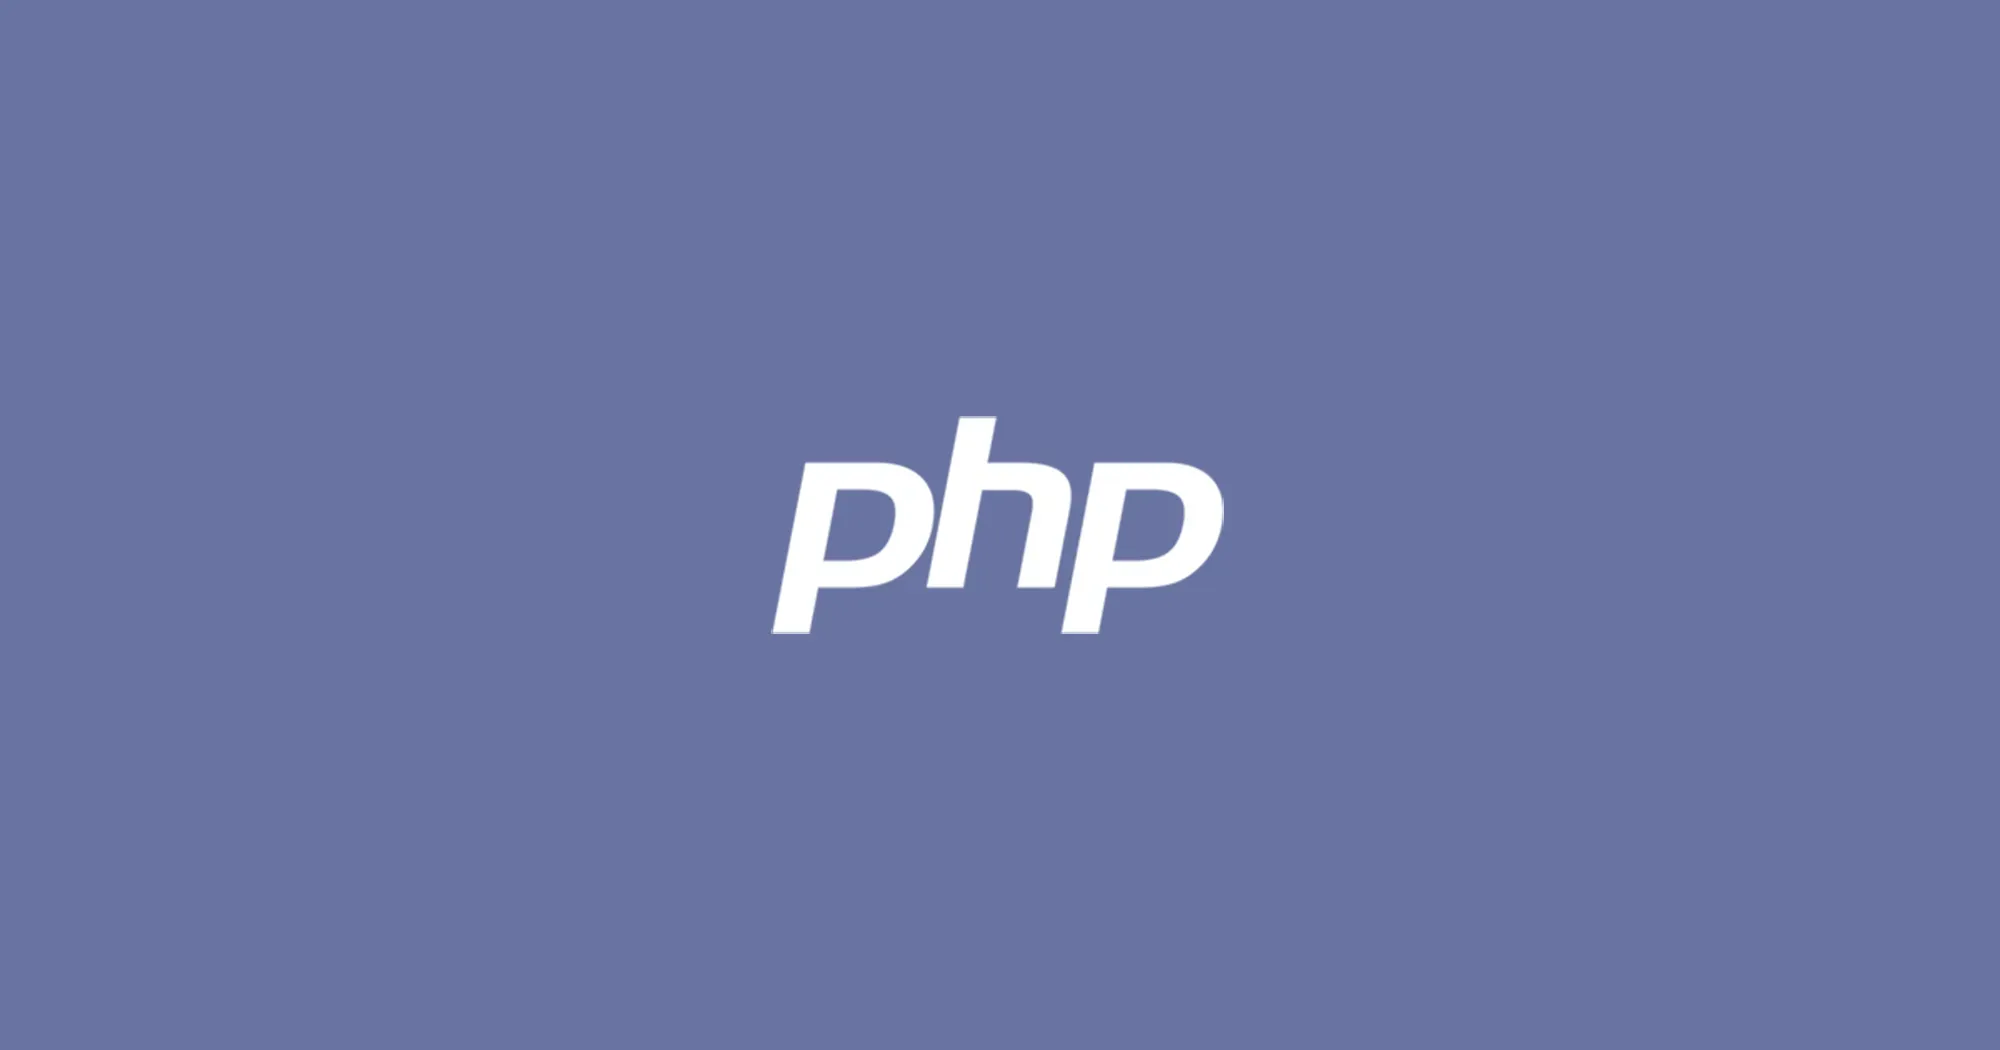 Mostrar los errores de PHP en pantalla